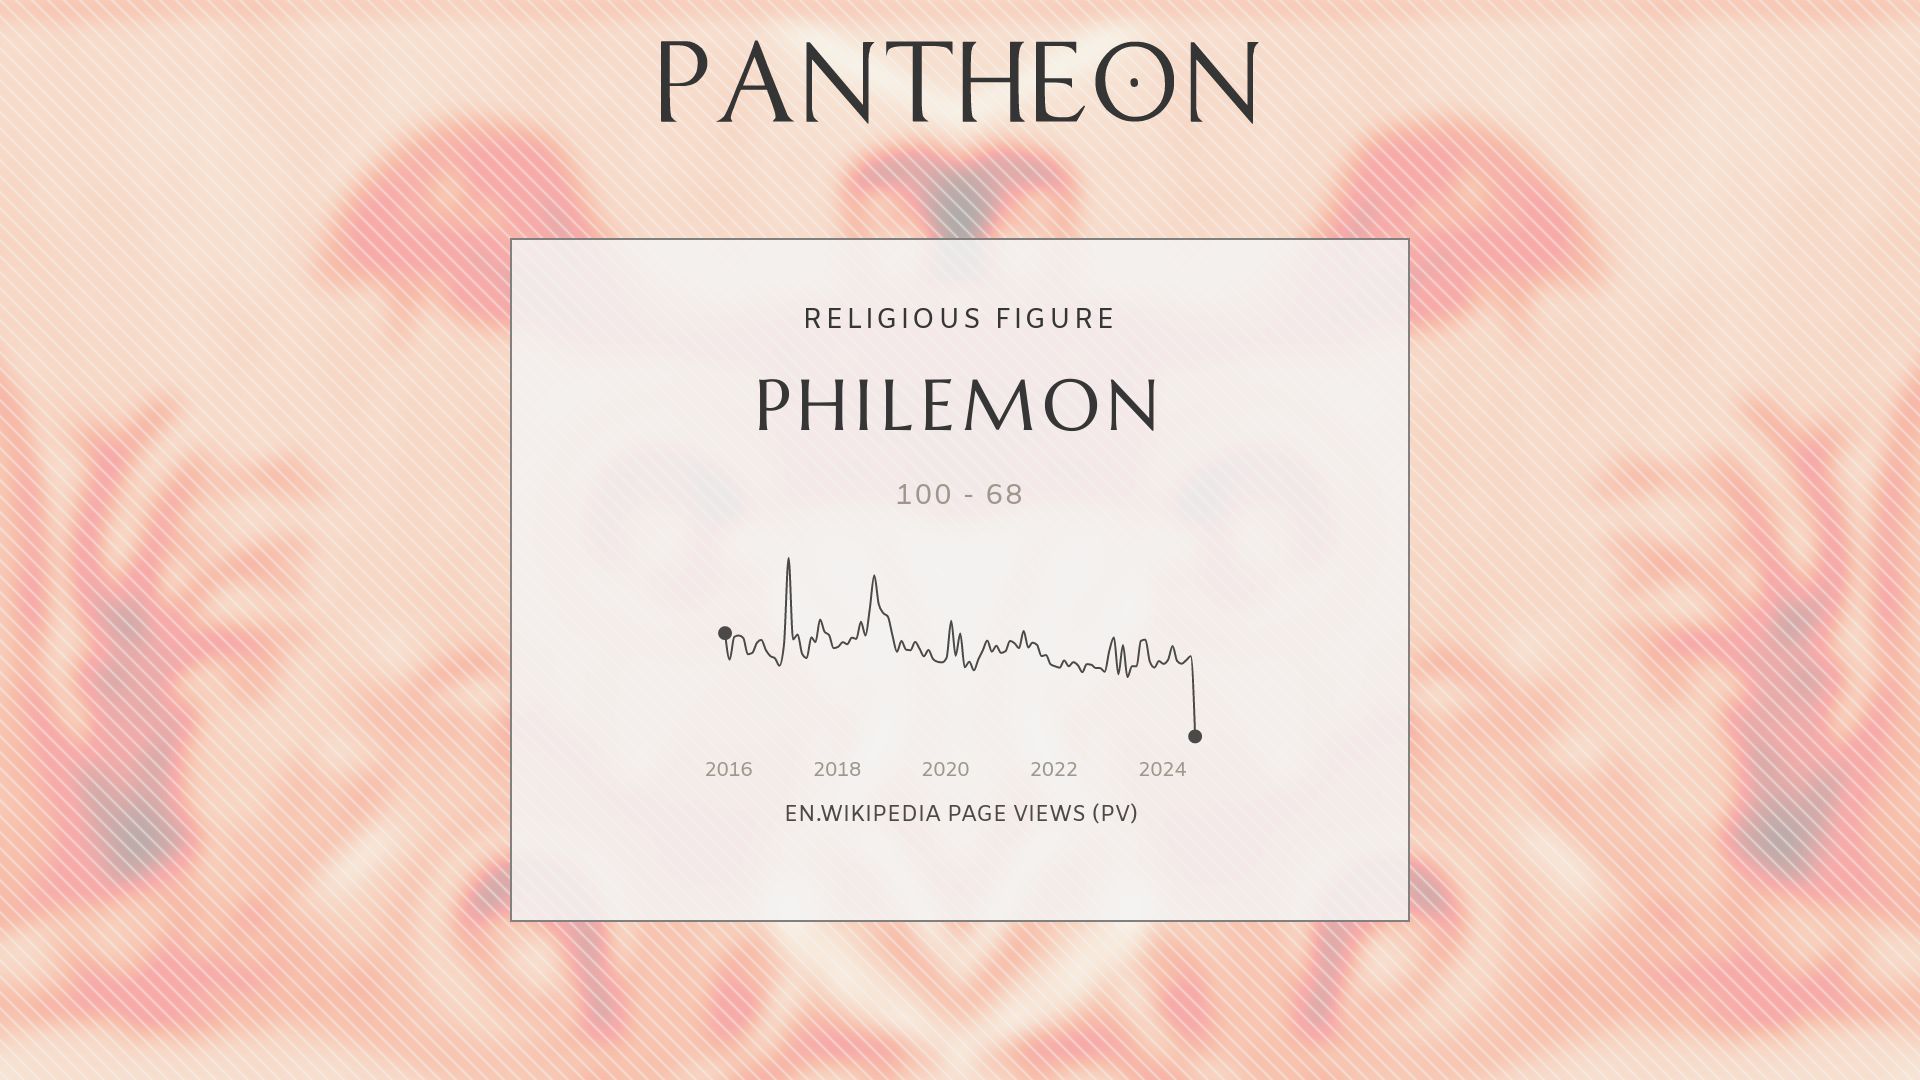 Philemon Biography | Pantheon